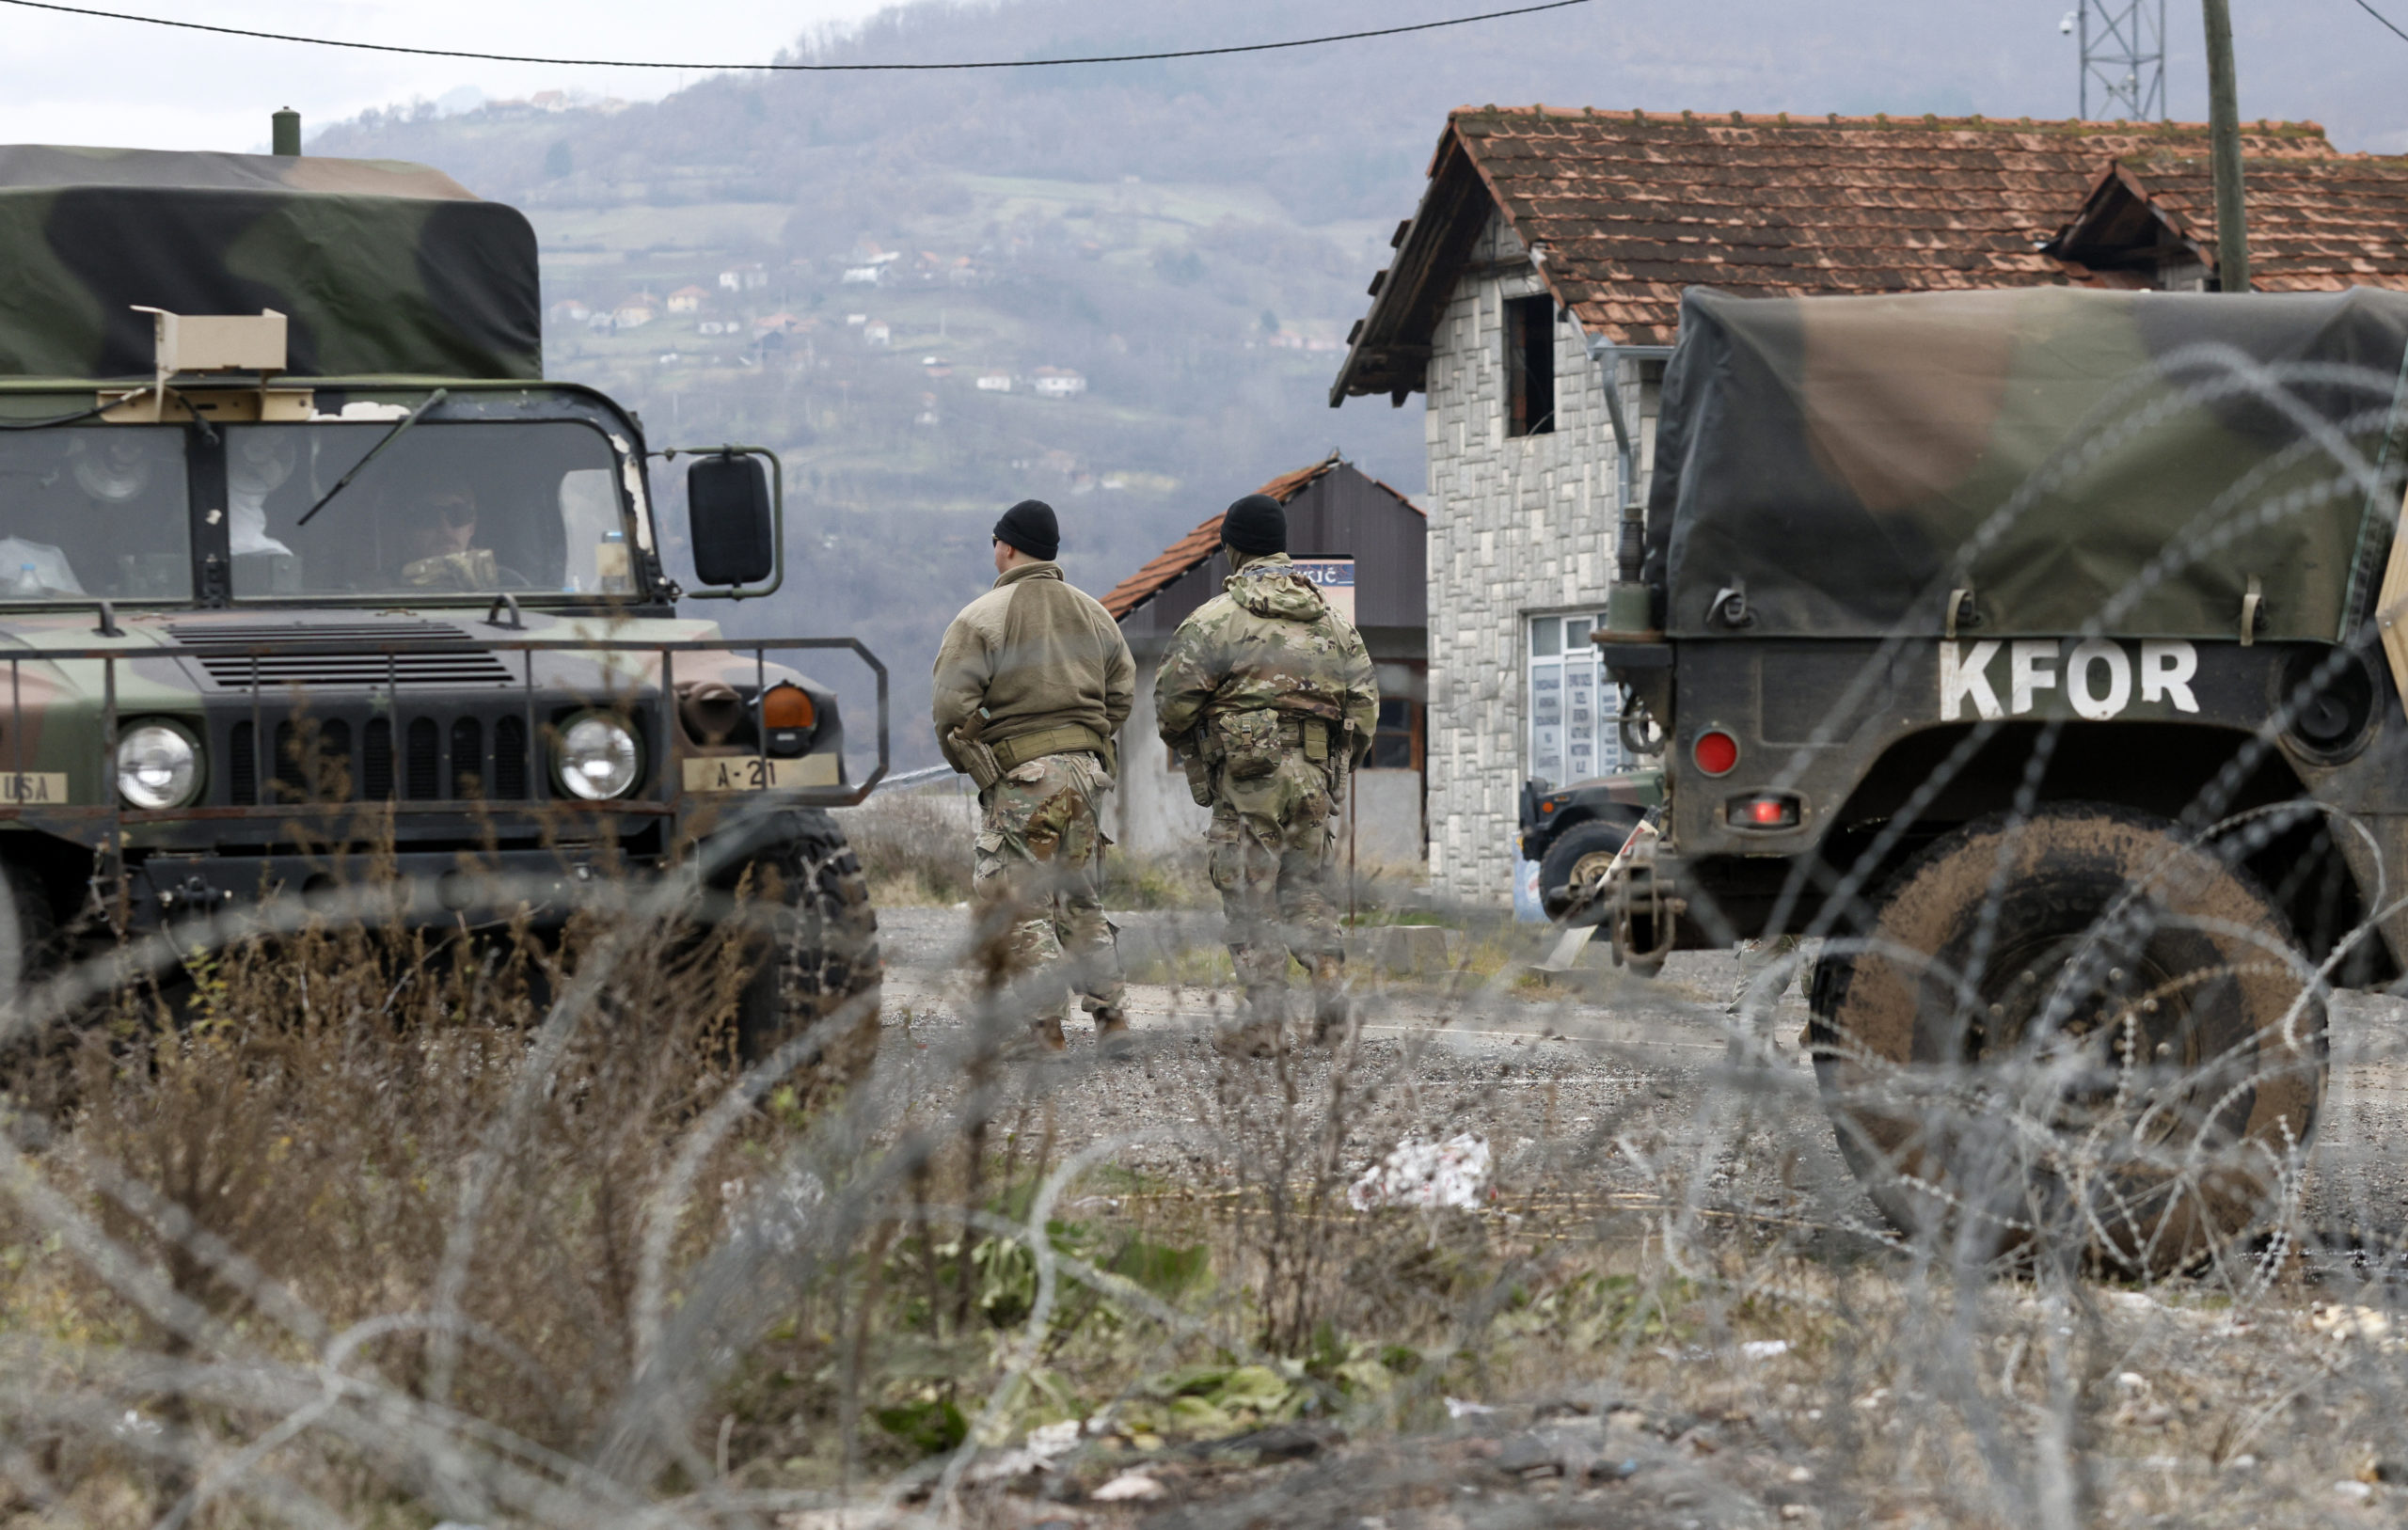 Σερβία-Κόσοβο: Πυροβολισμοί στη Μιτρόβιτσα, κοντά σε περίπολο της KFOR